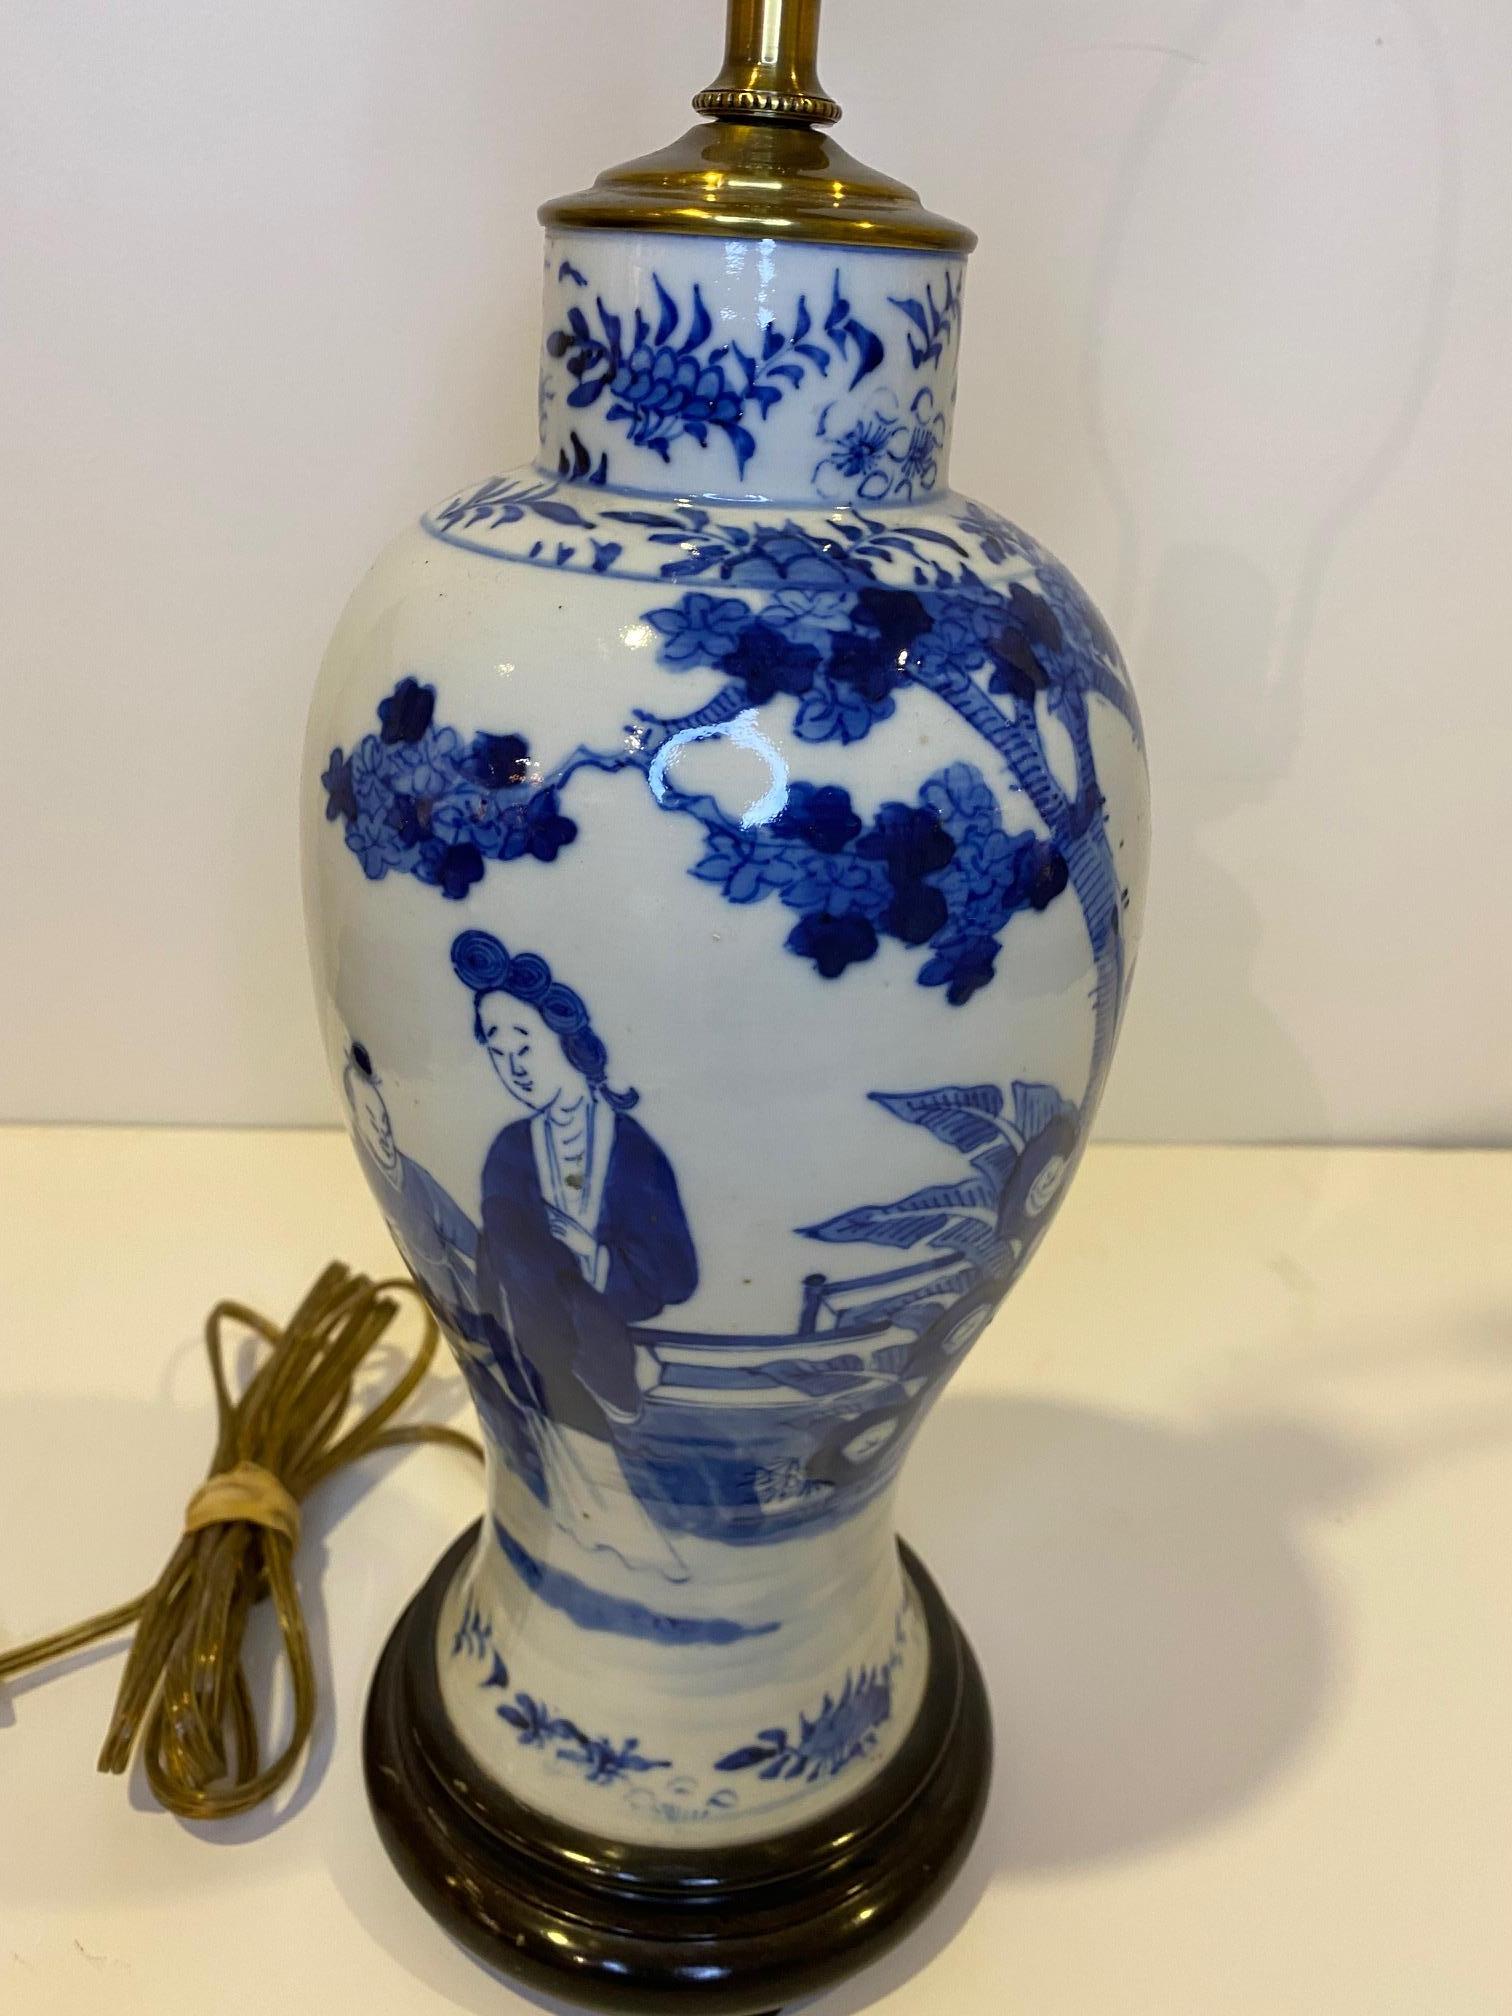 Schöne antike blau-weiße Vasenlampe aus chinesischem Porzellan mit gedrechseltem Holzsockel. 